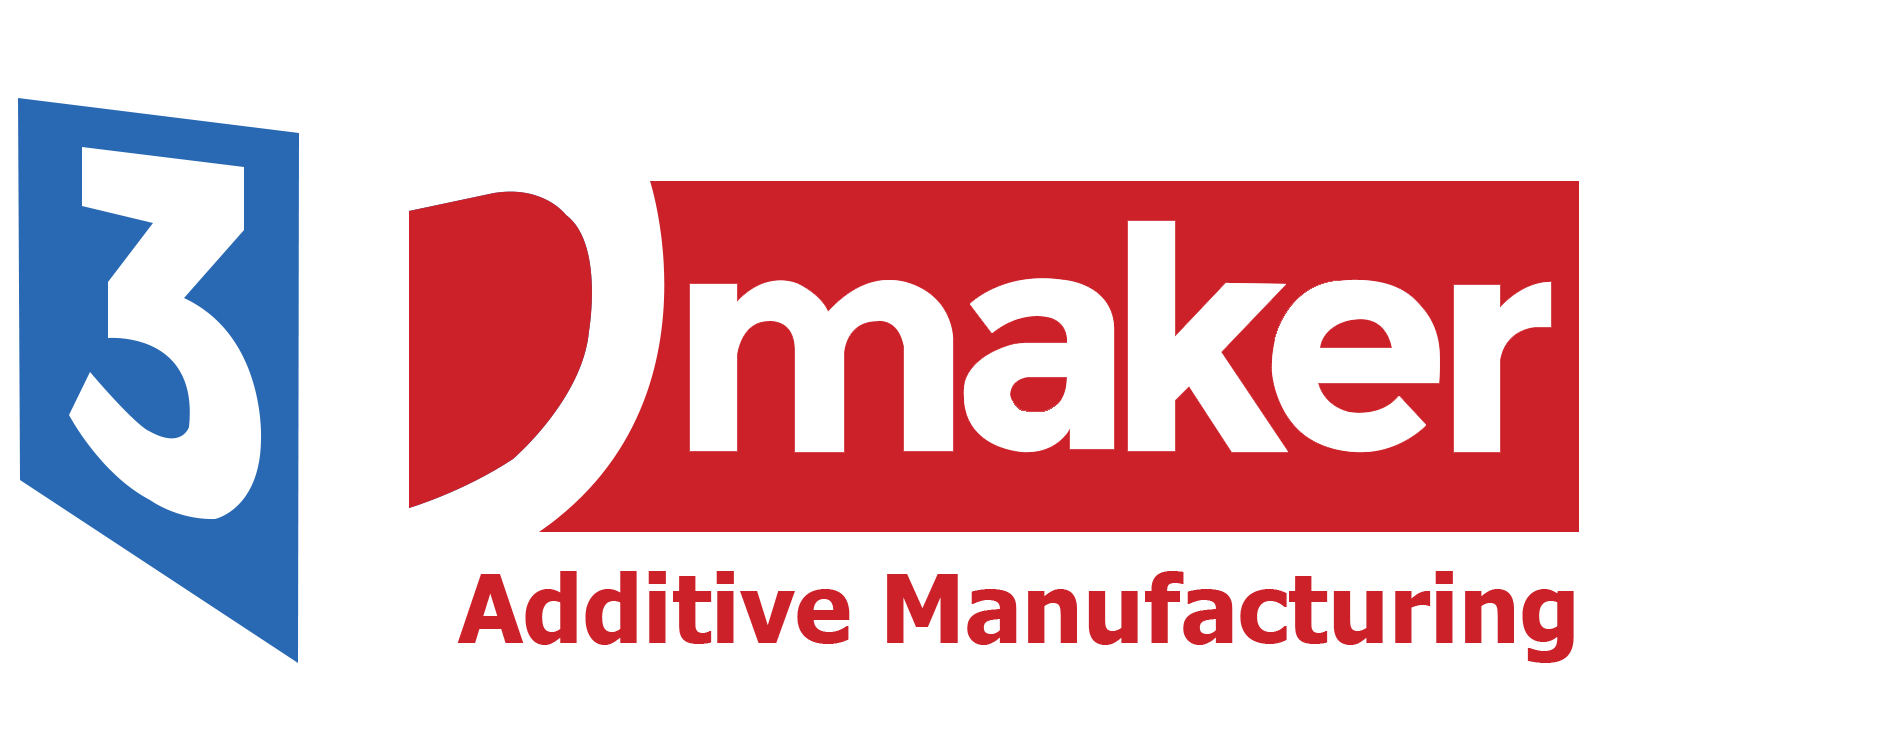 3DMaker - Thương hiệu tiên phong trong lĩnh vực máy in 3D từ 2014